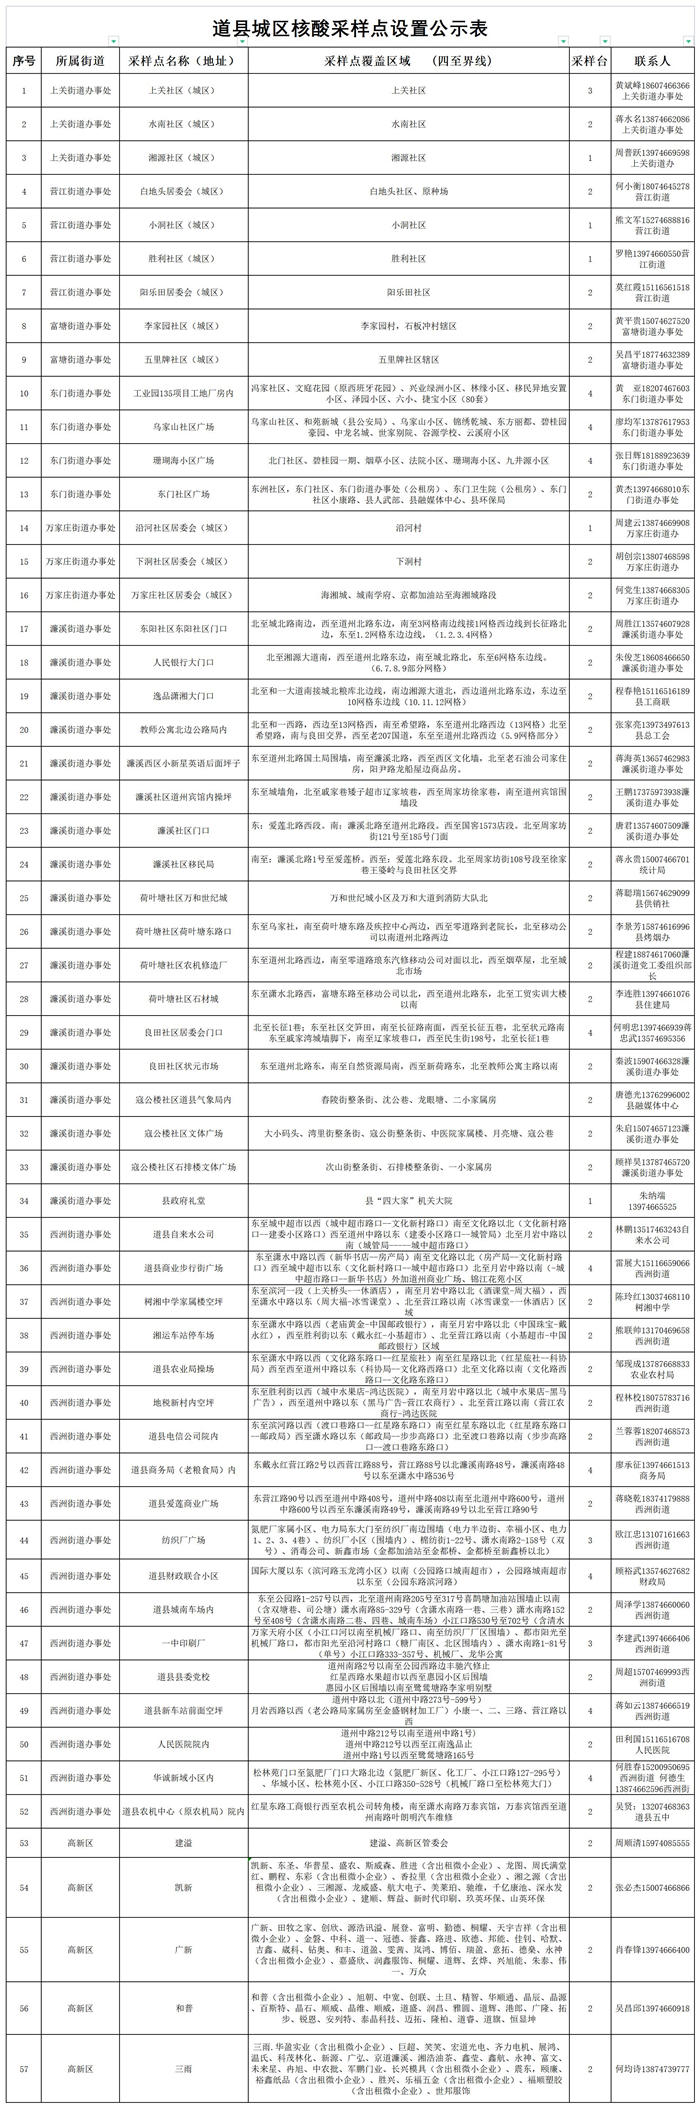 道县城区区域核酸检测采样点安排表（10.6）_A1F59_副本.jpg